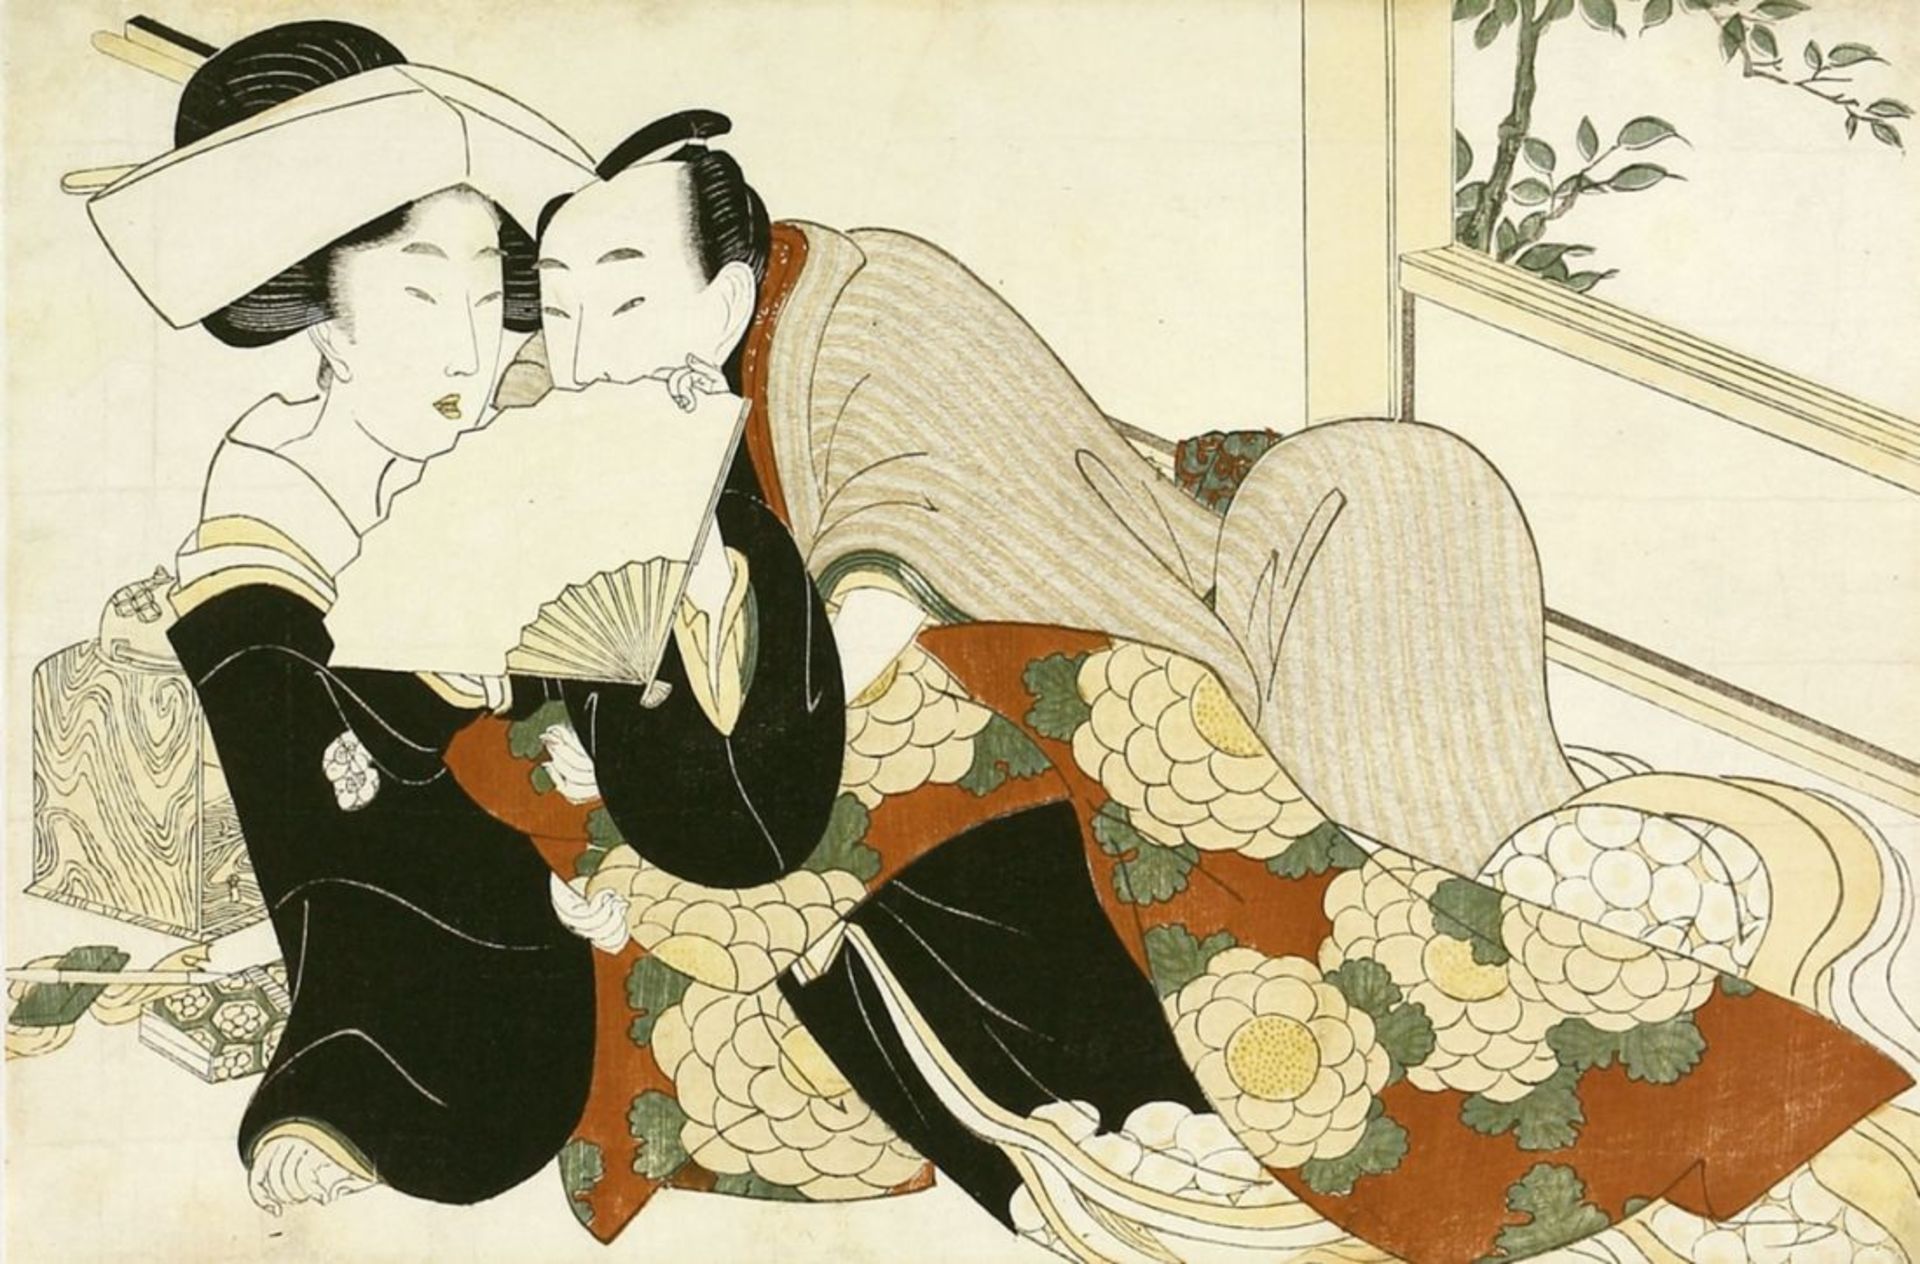 Japan, Farbholzschnitt, Eisen, Keisai (1790 - 1848) zugeschr.